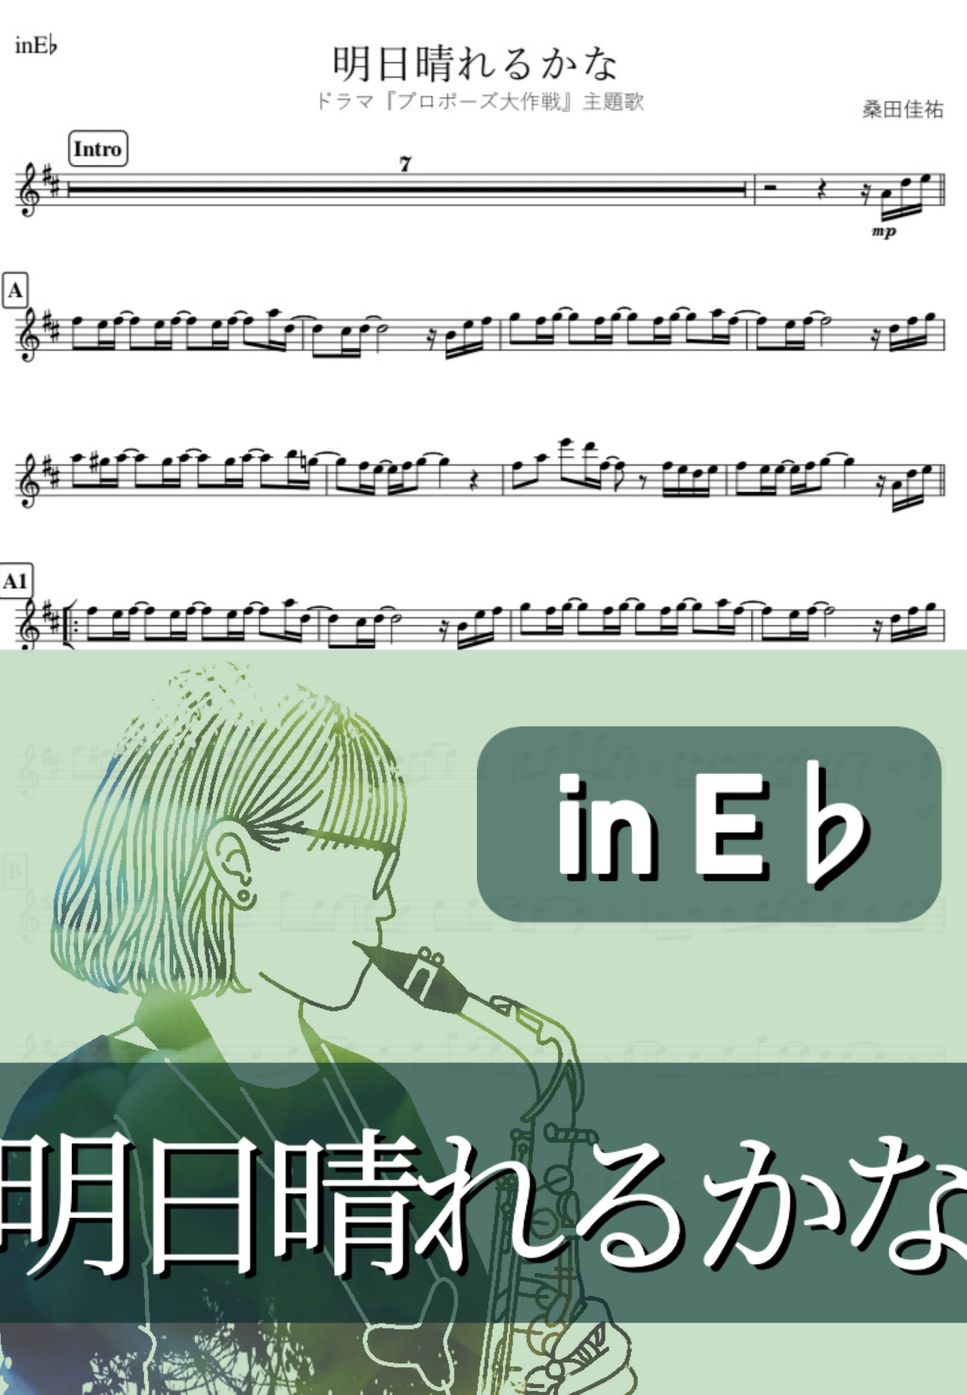 桑田佳祐 - 明日晴れるかな (E♭) by kanamusic